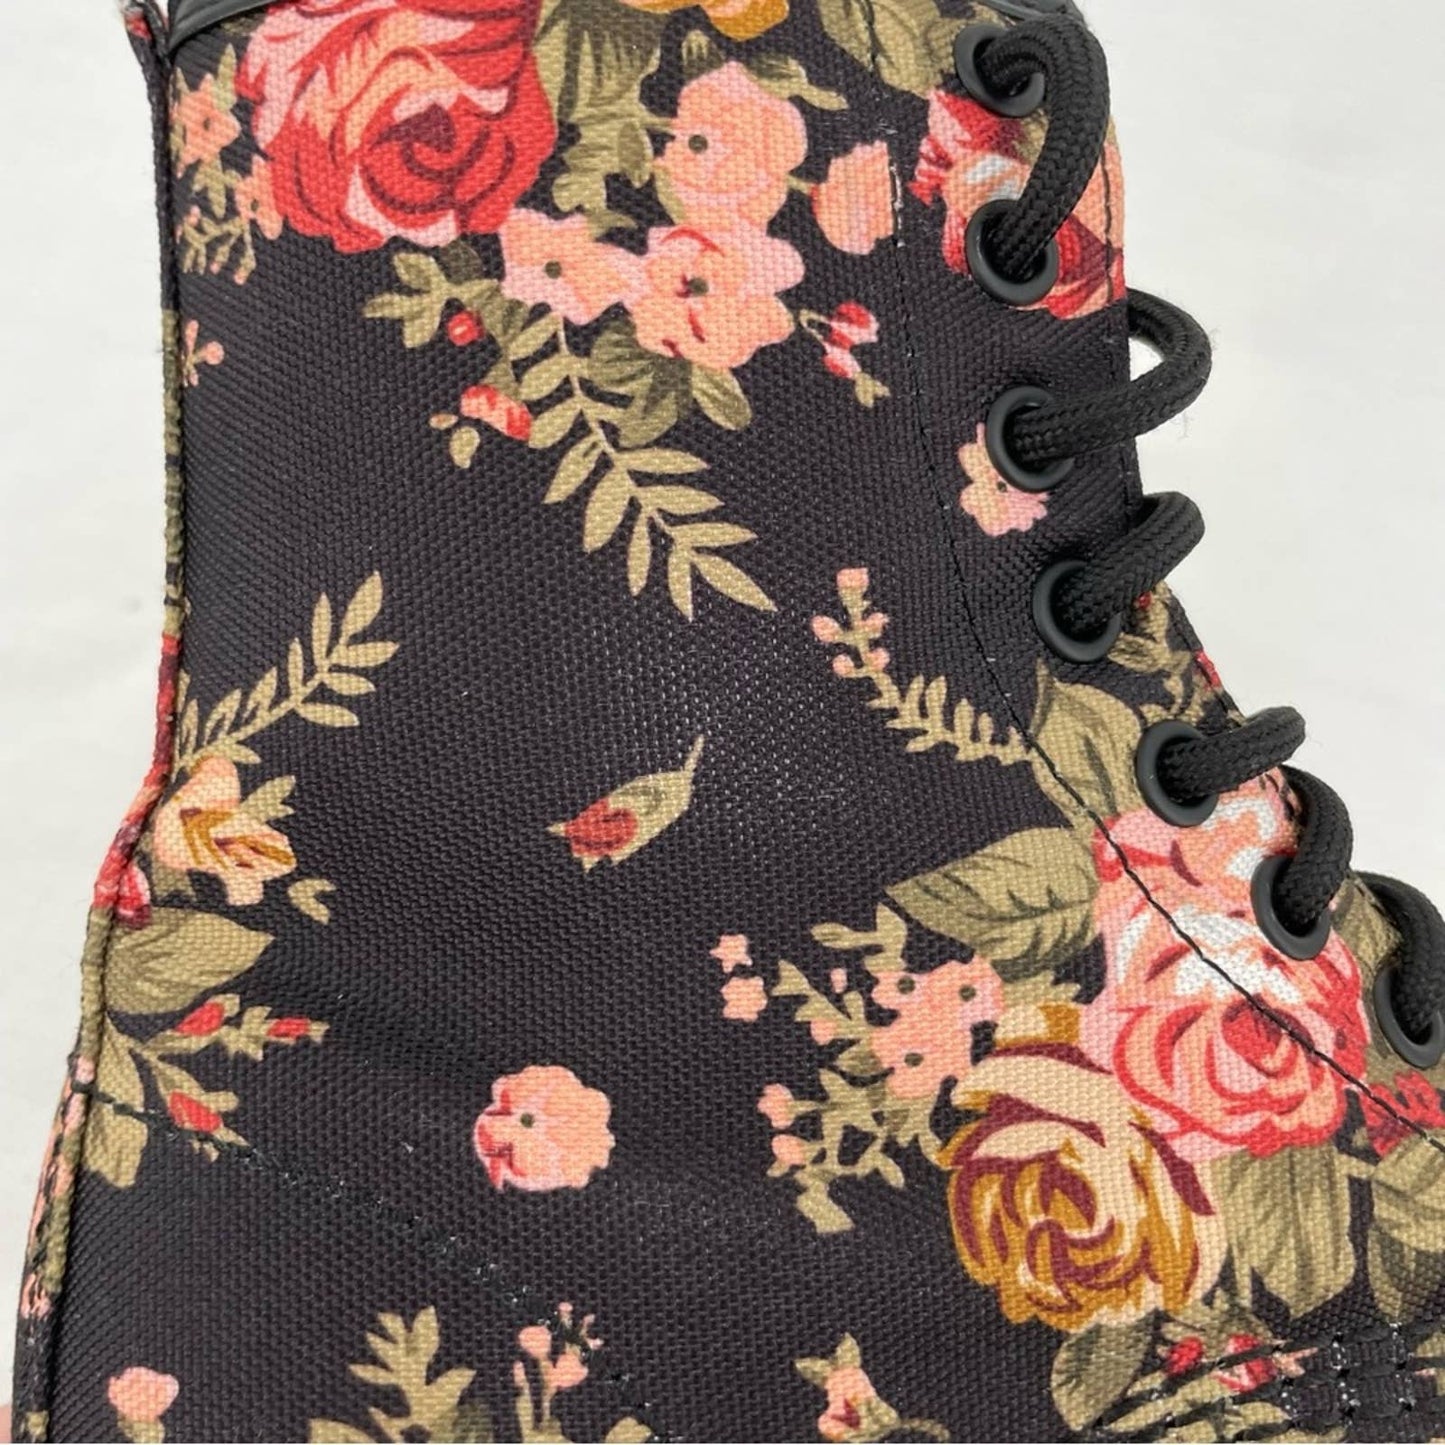 Dr. Martens 1460 Victorian Rose Antique Floral Black Canvas Combat Moto Boot Size 6